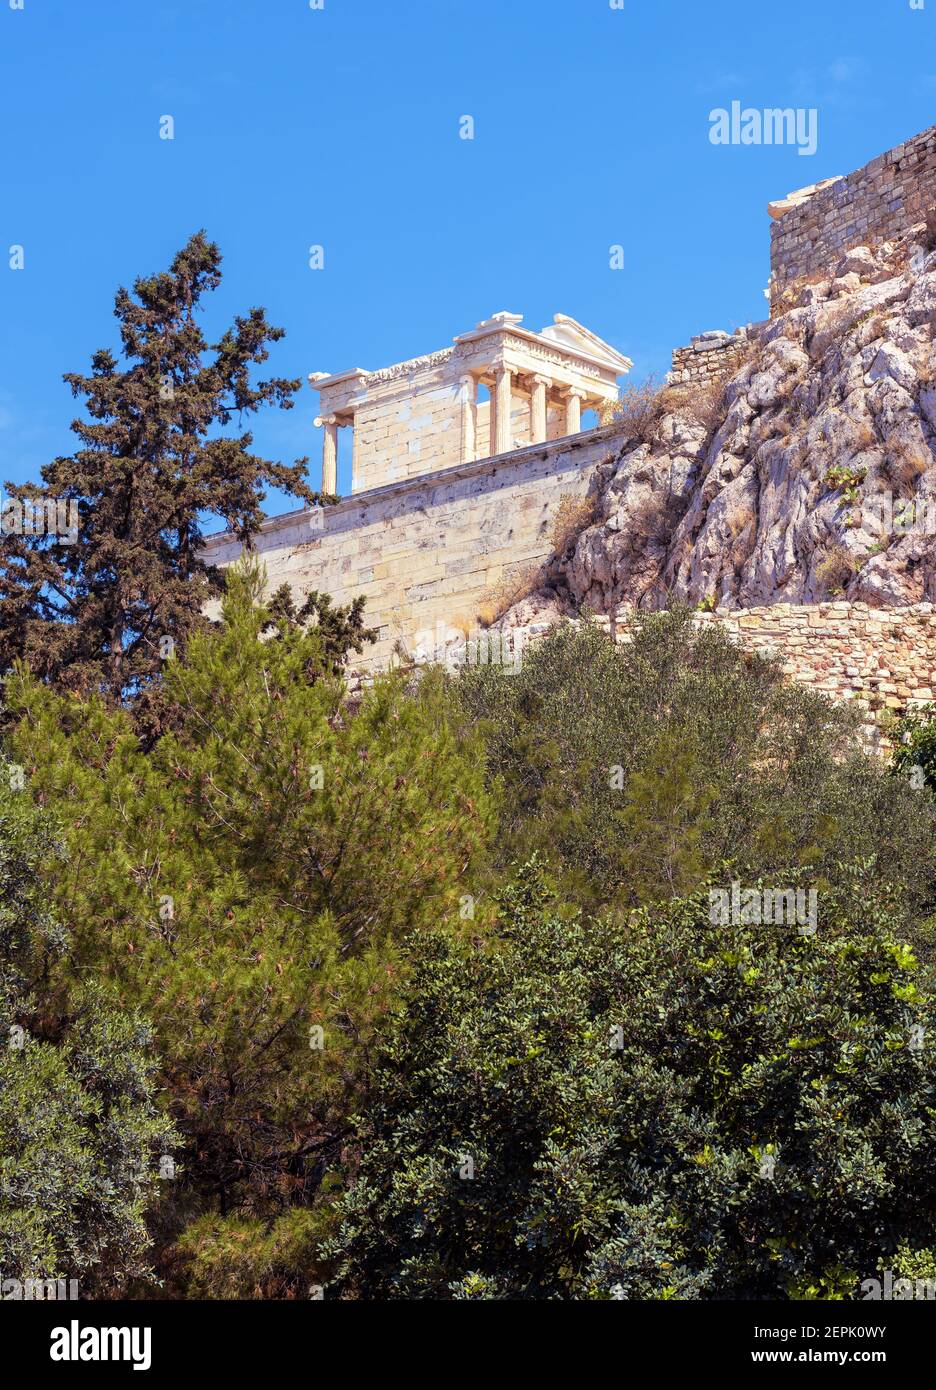 Athena Nike Tempel auf der Akropolis von Athen, Griechenland. Es ist Wahrzeichen von Athen. Landschaftlich schöner Blick auf das klassische Gebäude auf dem berühmten Akropolis-Hügel, Altgriechisch Stockfoto